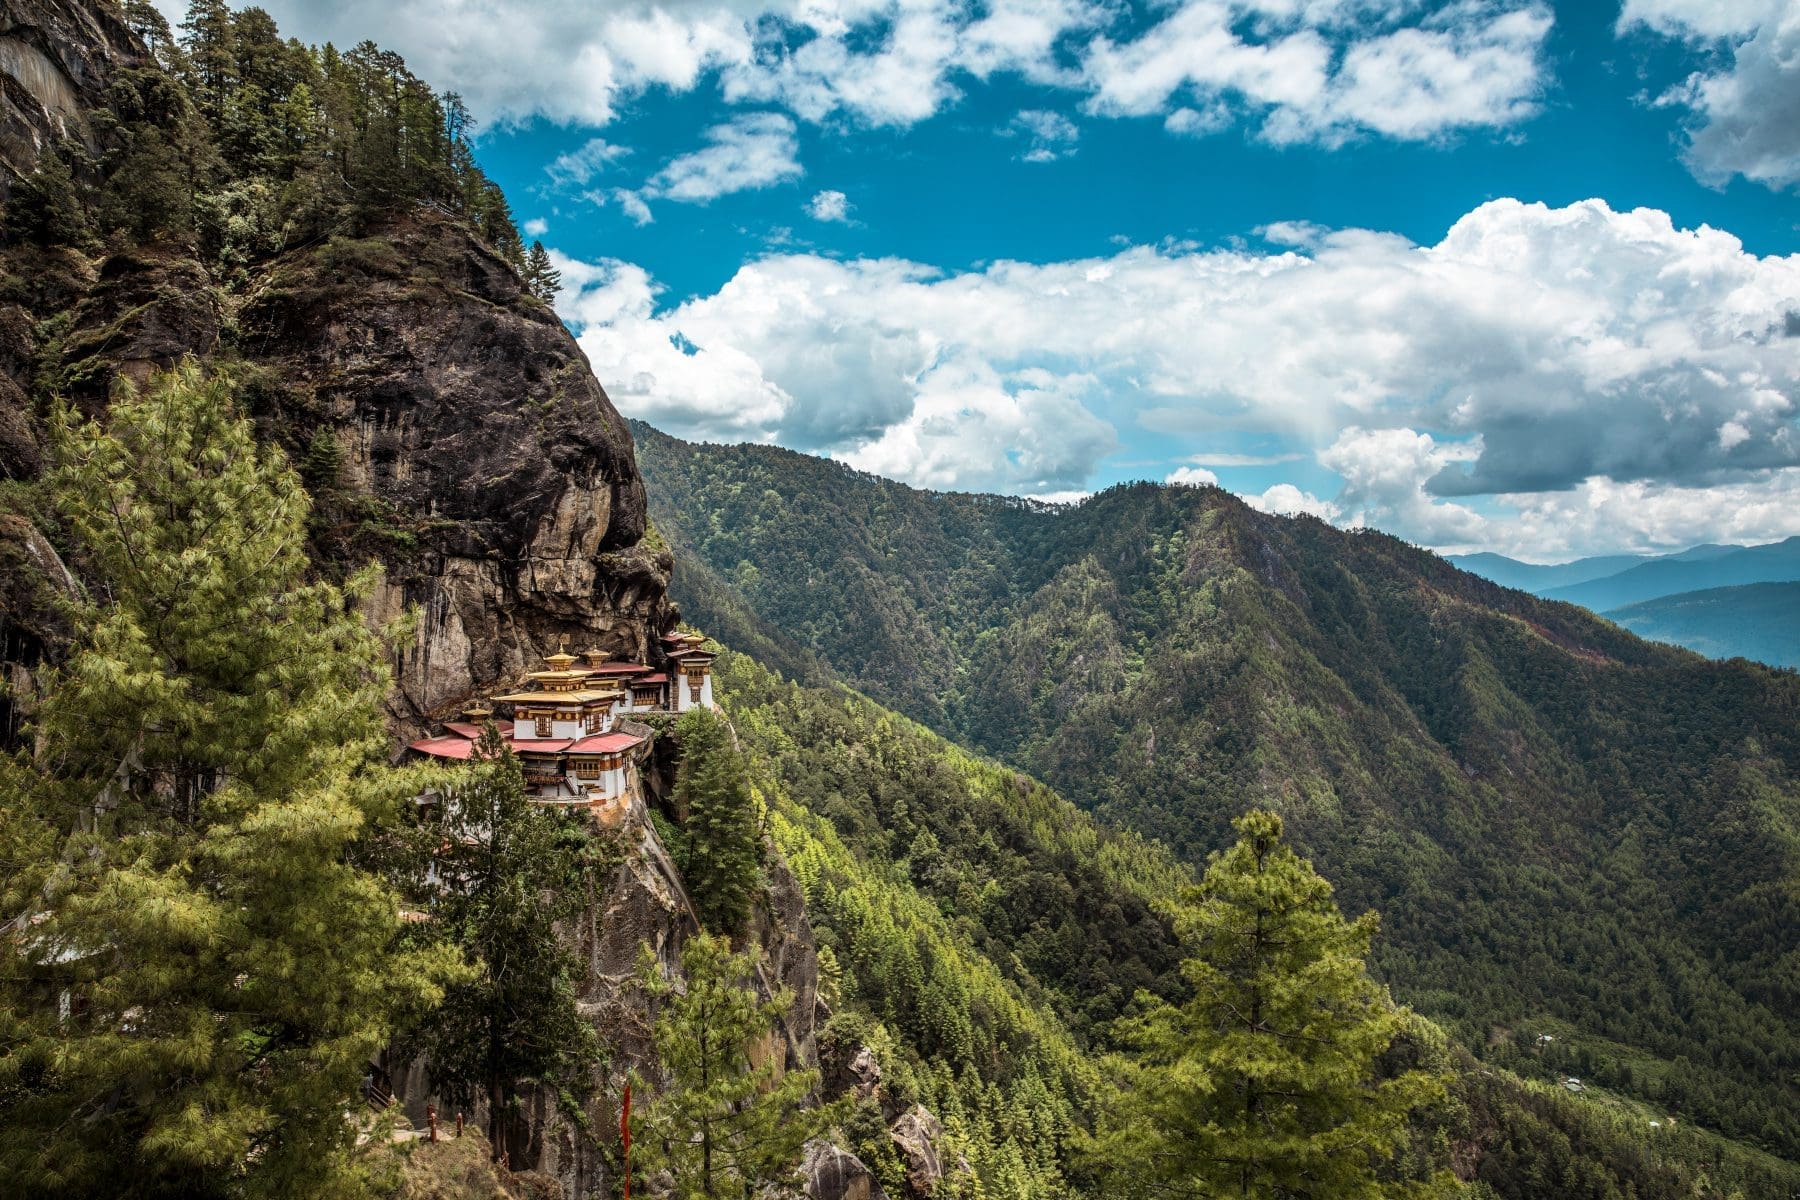 A New Beginning for Bhutan